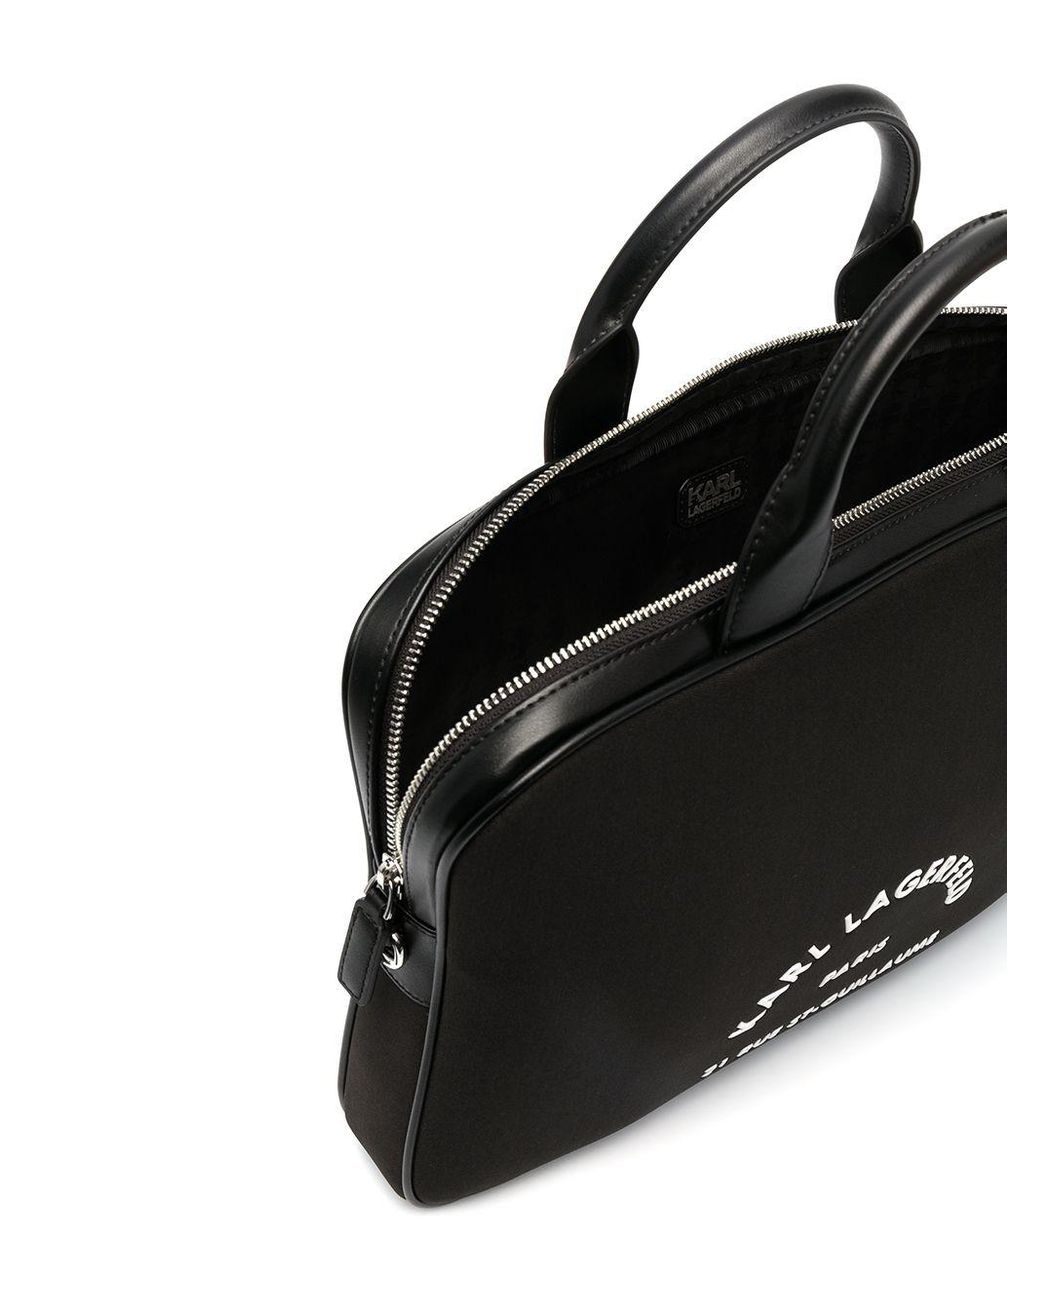 13 ''Rue St Guillaume black KLCS133RSGSFBK laptop Karl Lagerfeld tablet case  - AliExpress